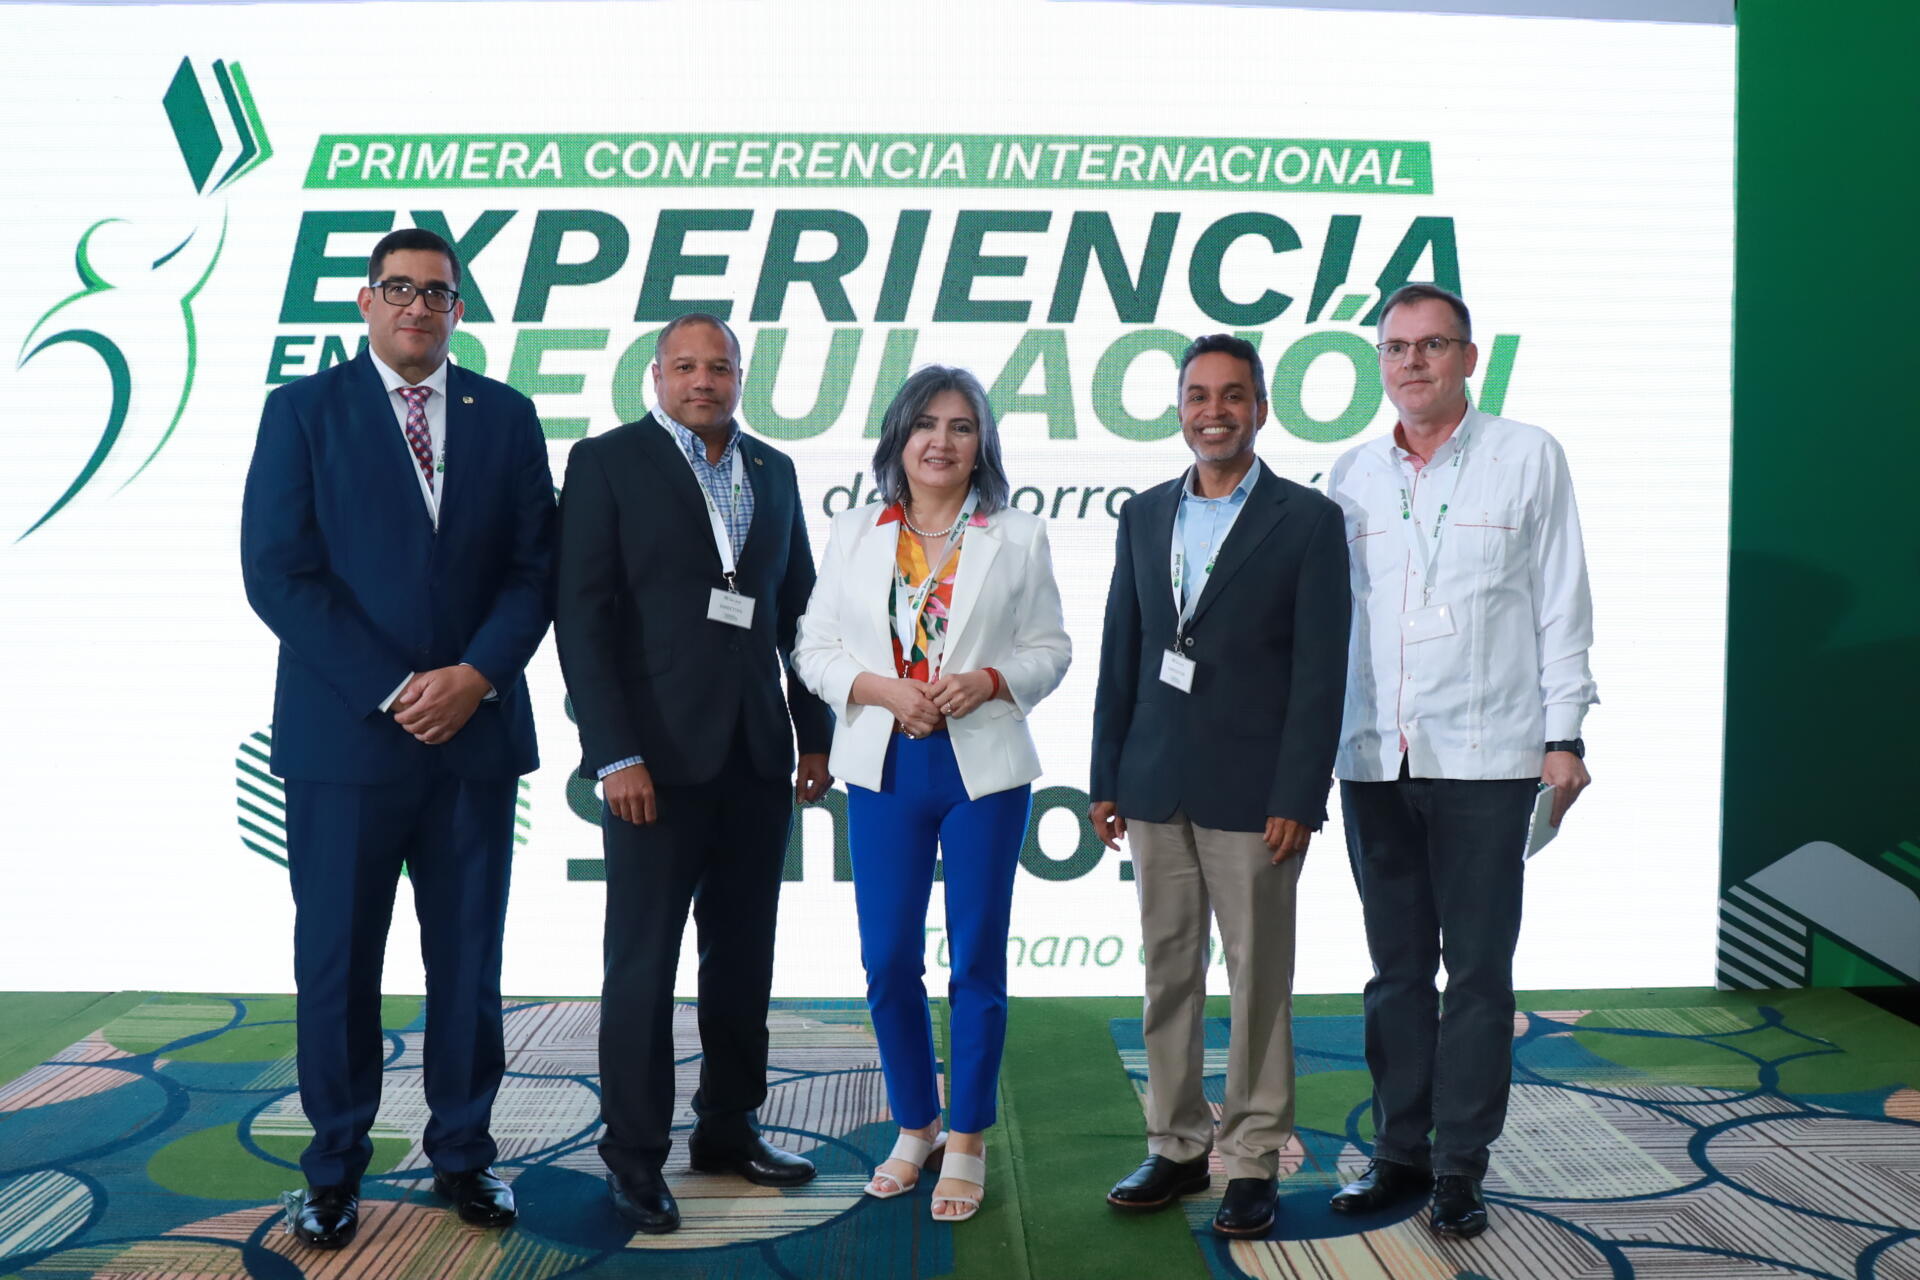 Cooperativa San José realiza con éxito la conferencia internacional